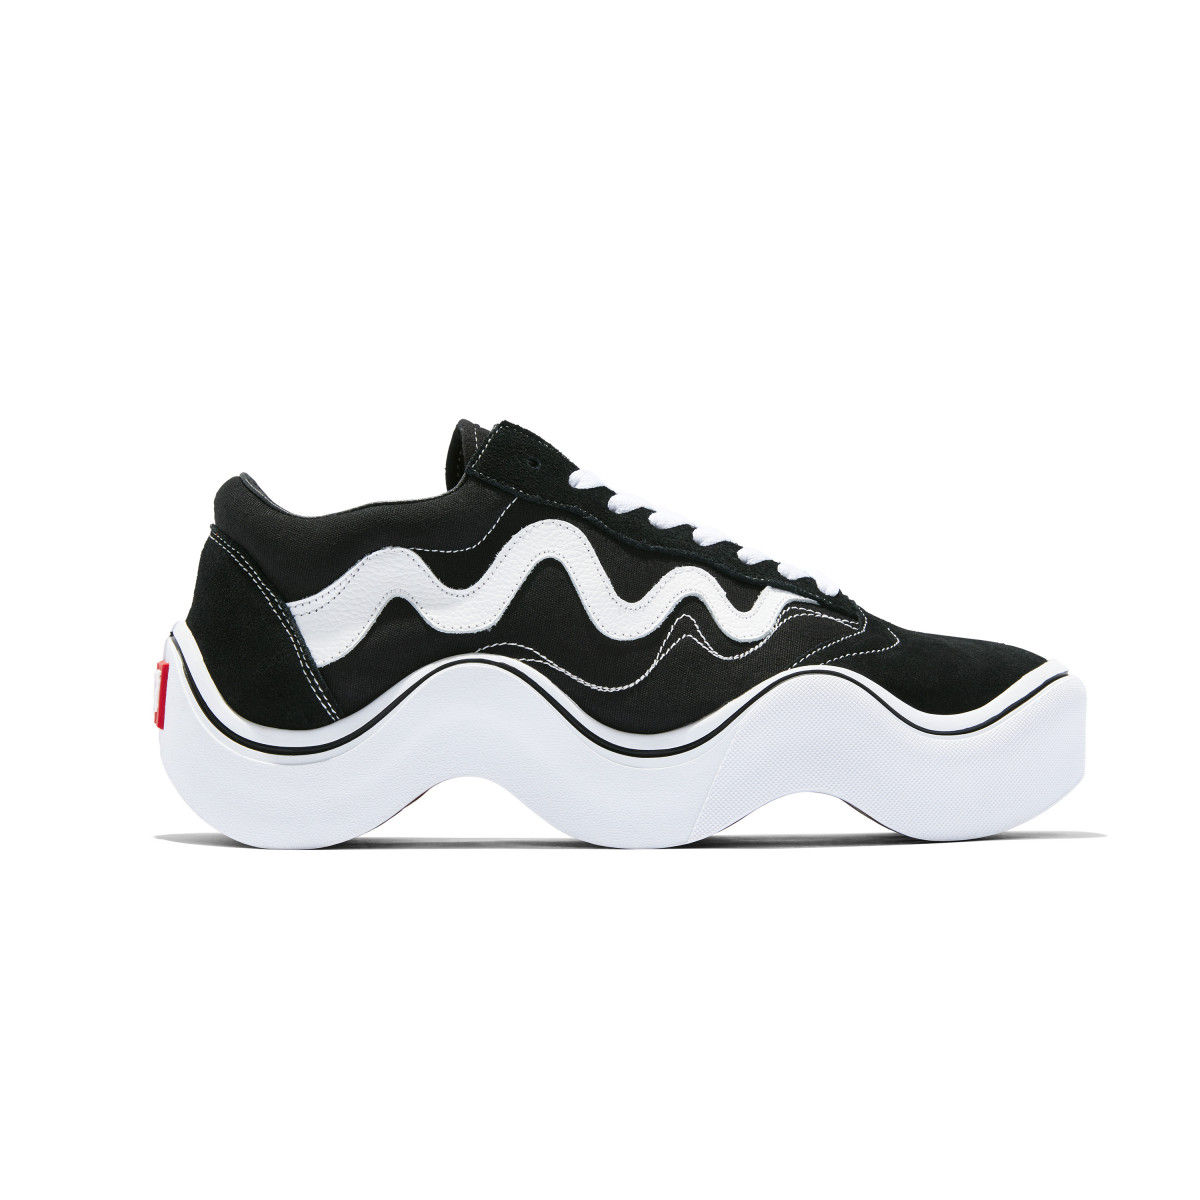 mschf-wavy-shoe-sneaker-tyga-collab-vans- (2)